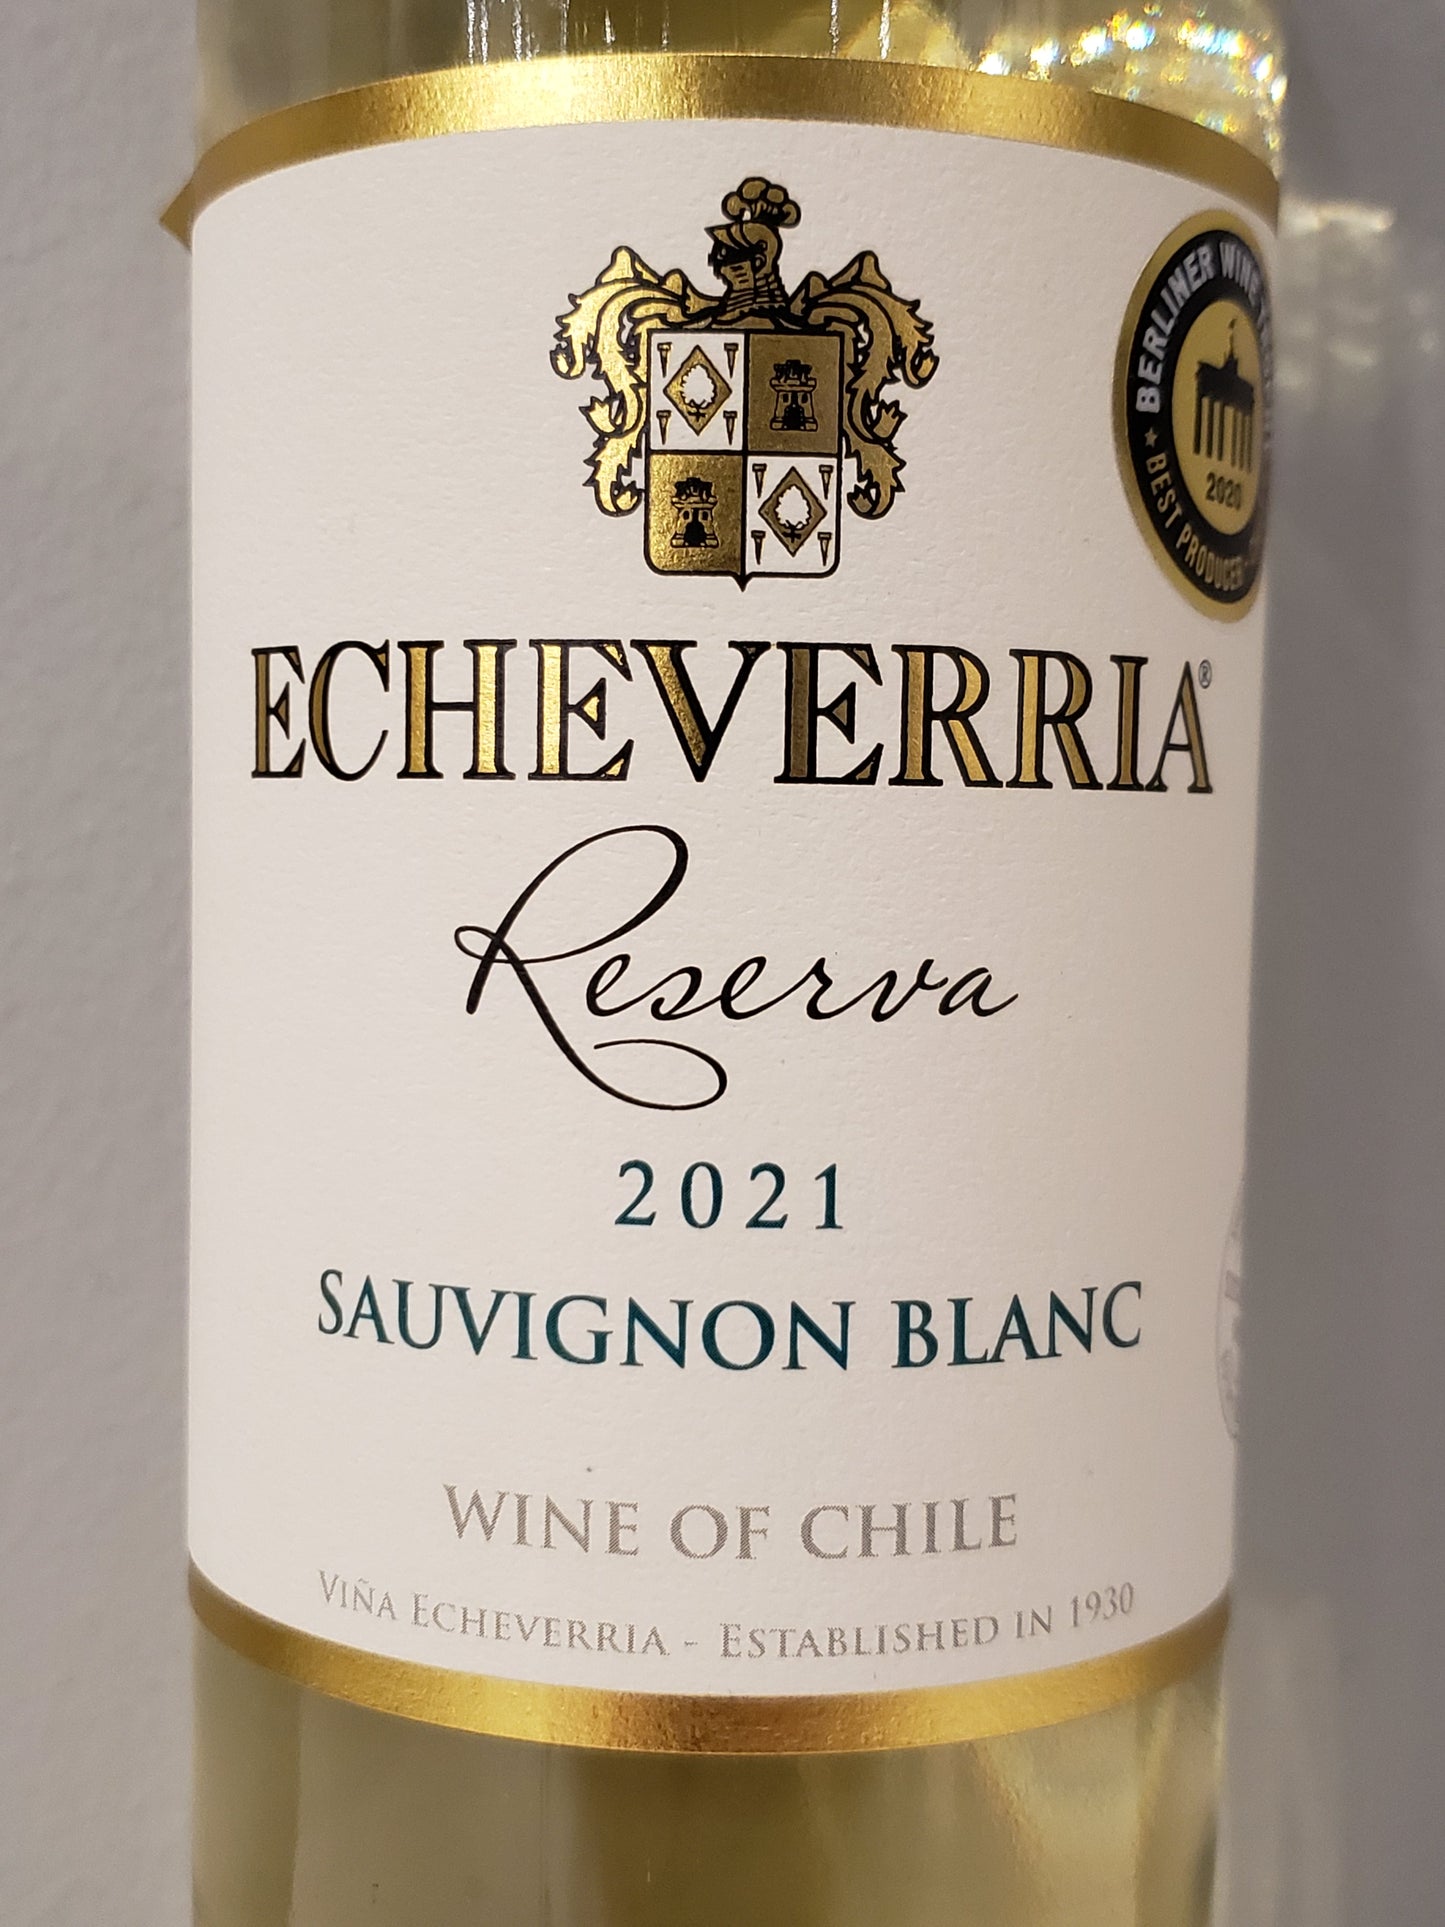 Echeverria - Sauvignon Blanc - Chile